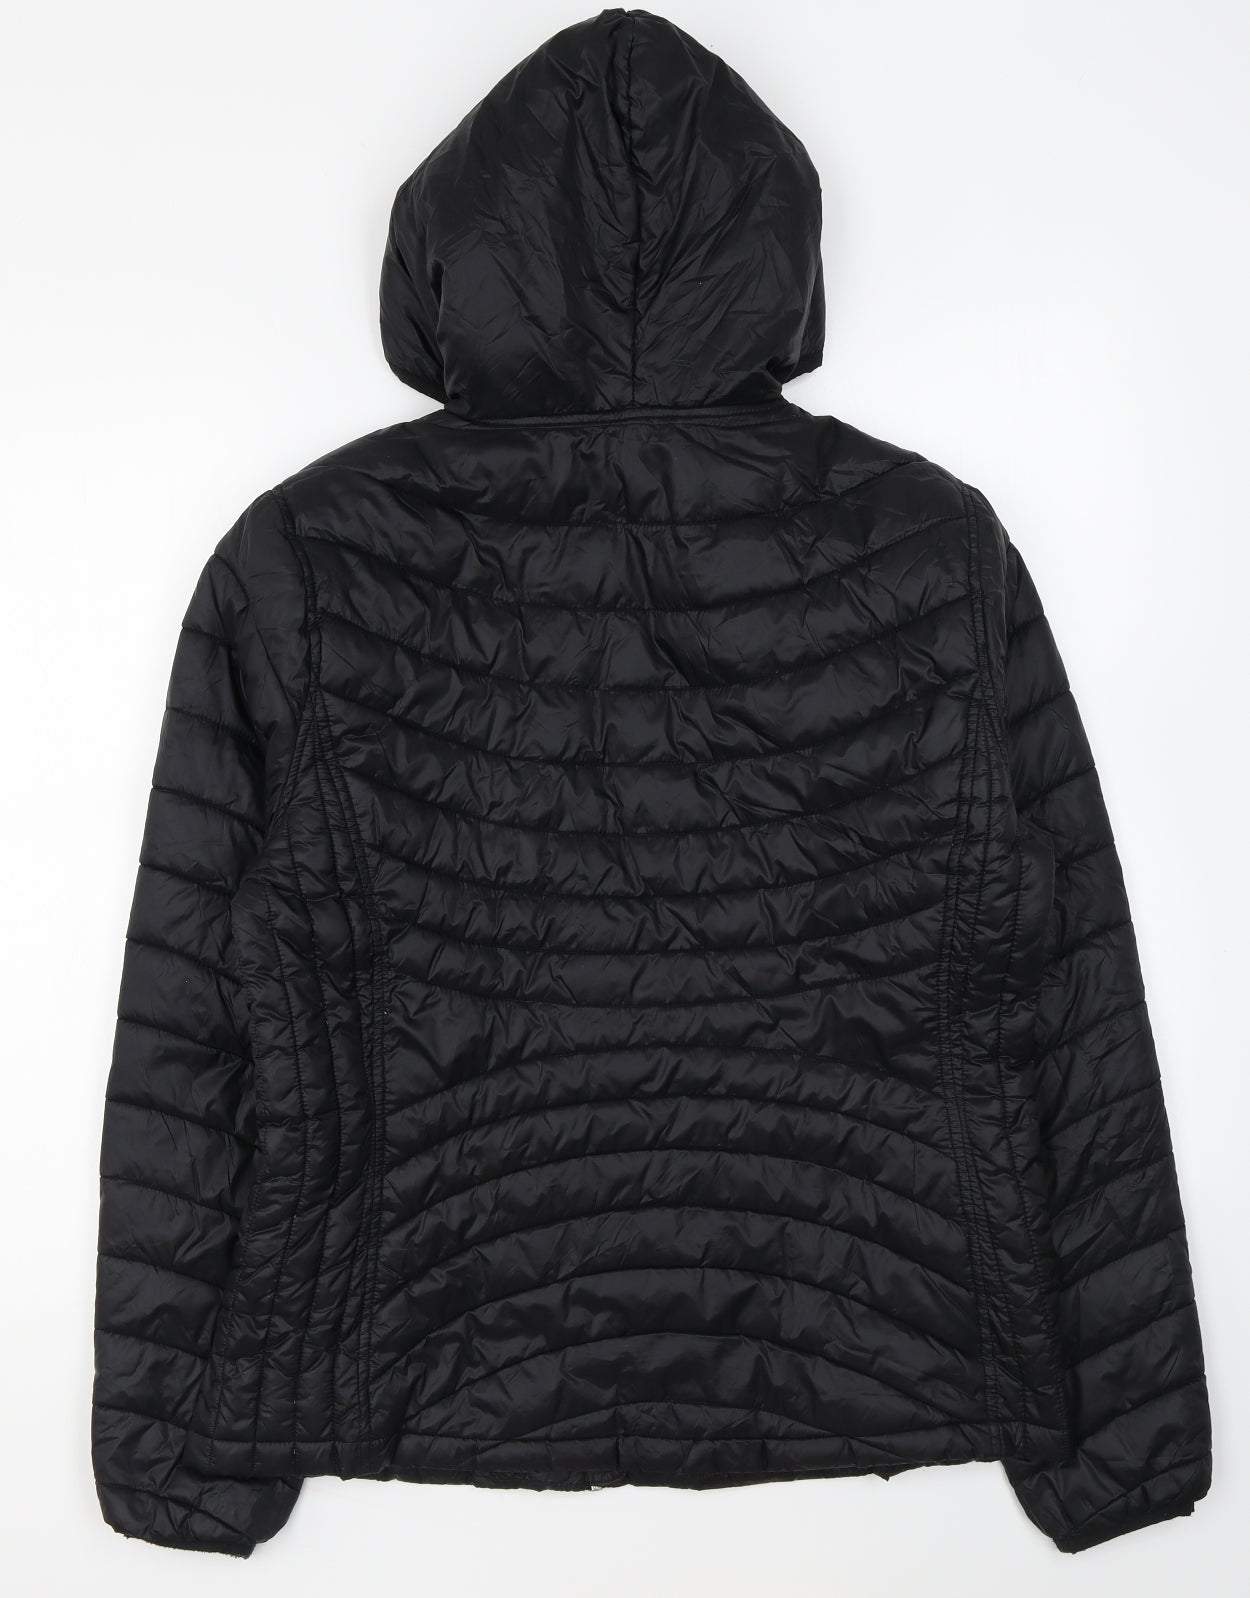 Tek Gear Mens Black Puffer Jacket Coat Size L Zip – Preworn Ltd